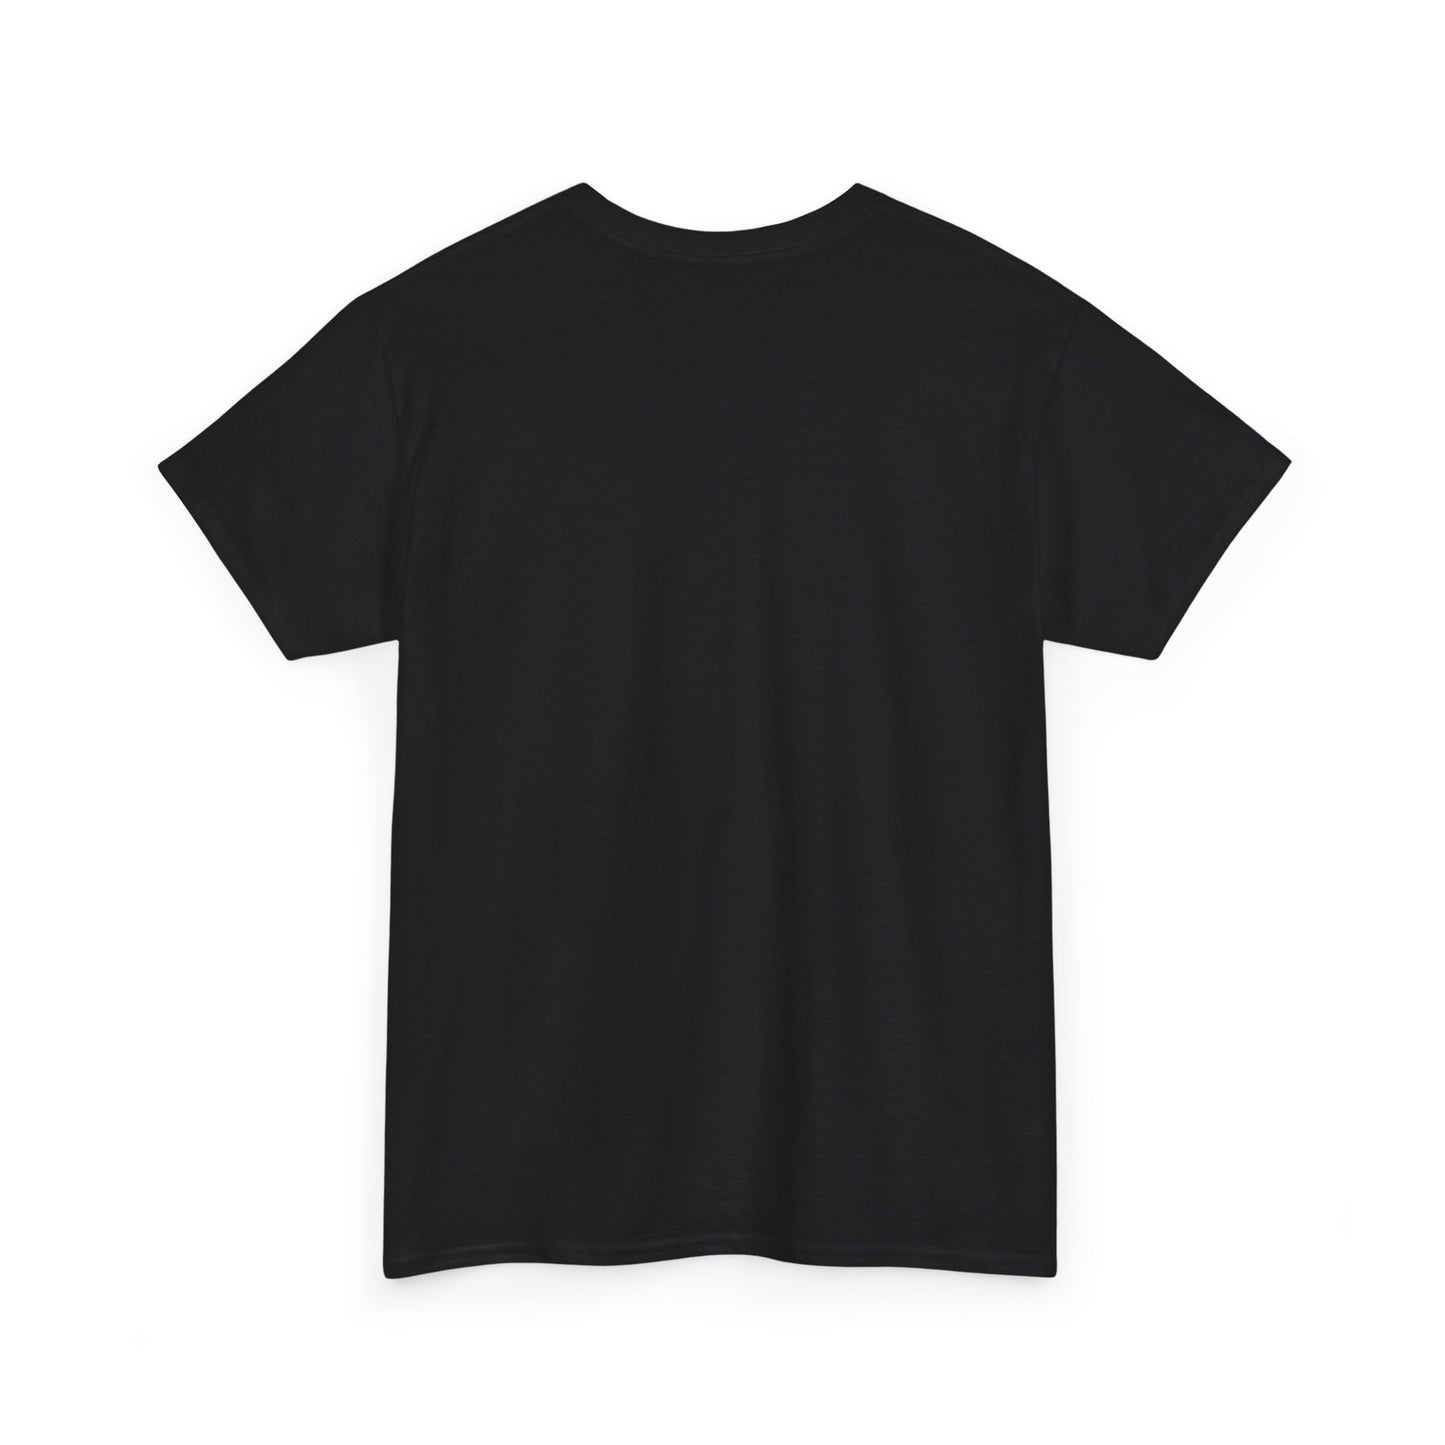 Unisex Heavy Cotton Graphic design (7 Mile Down, What Up Doe) T-shirt